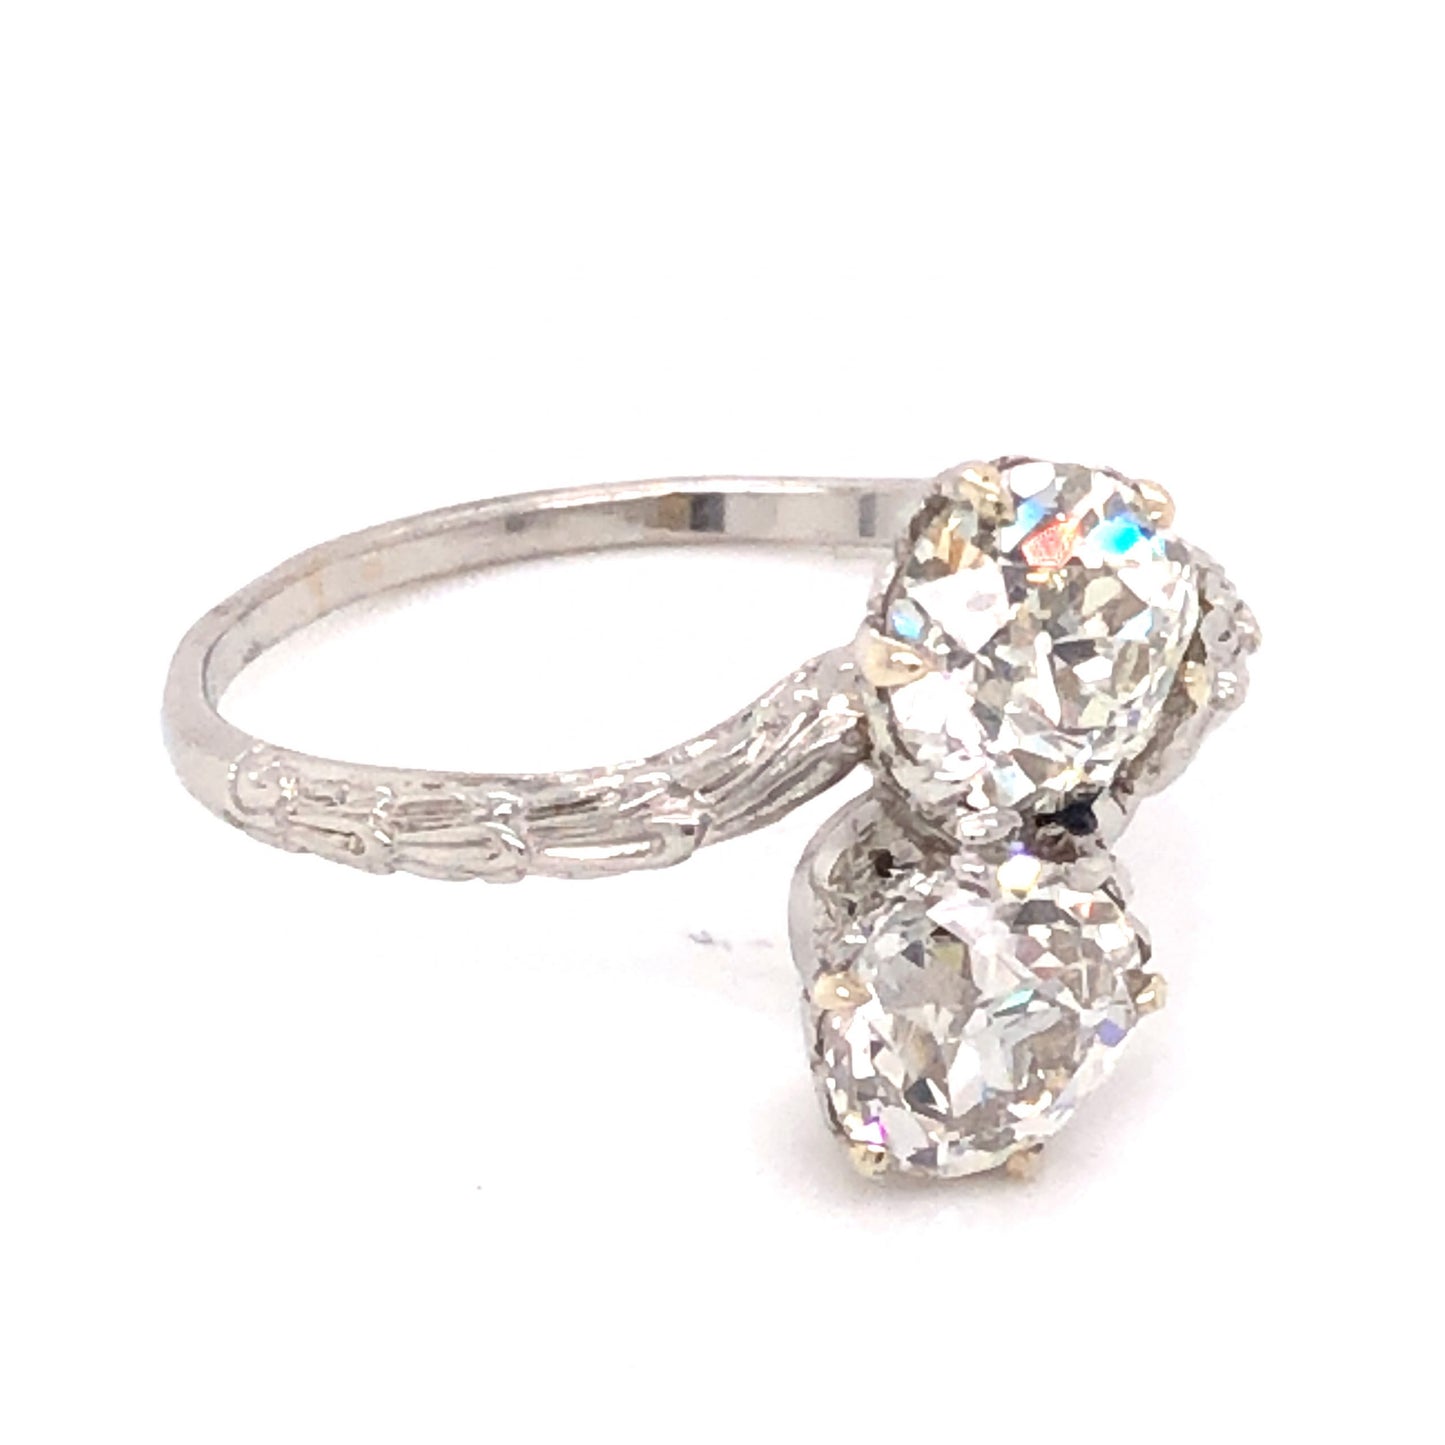 2.15 Art Deco Diamond Engagement Ring in Platinum